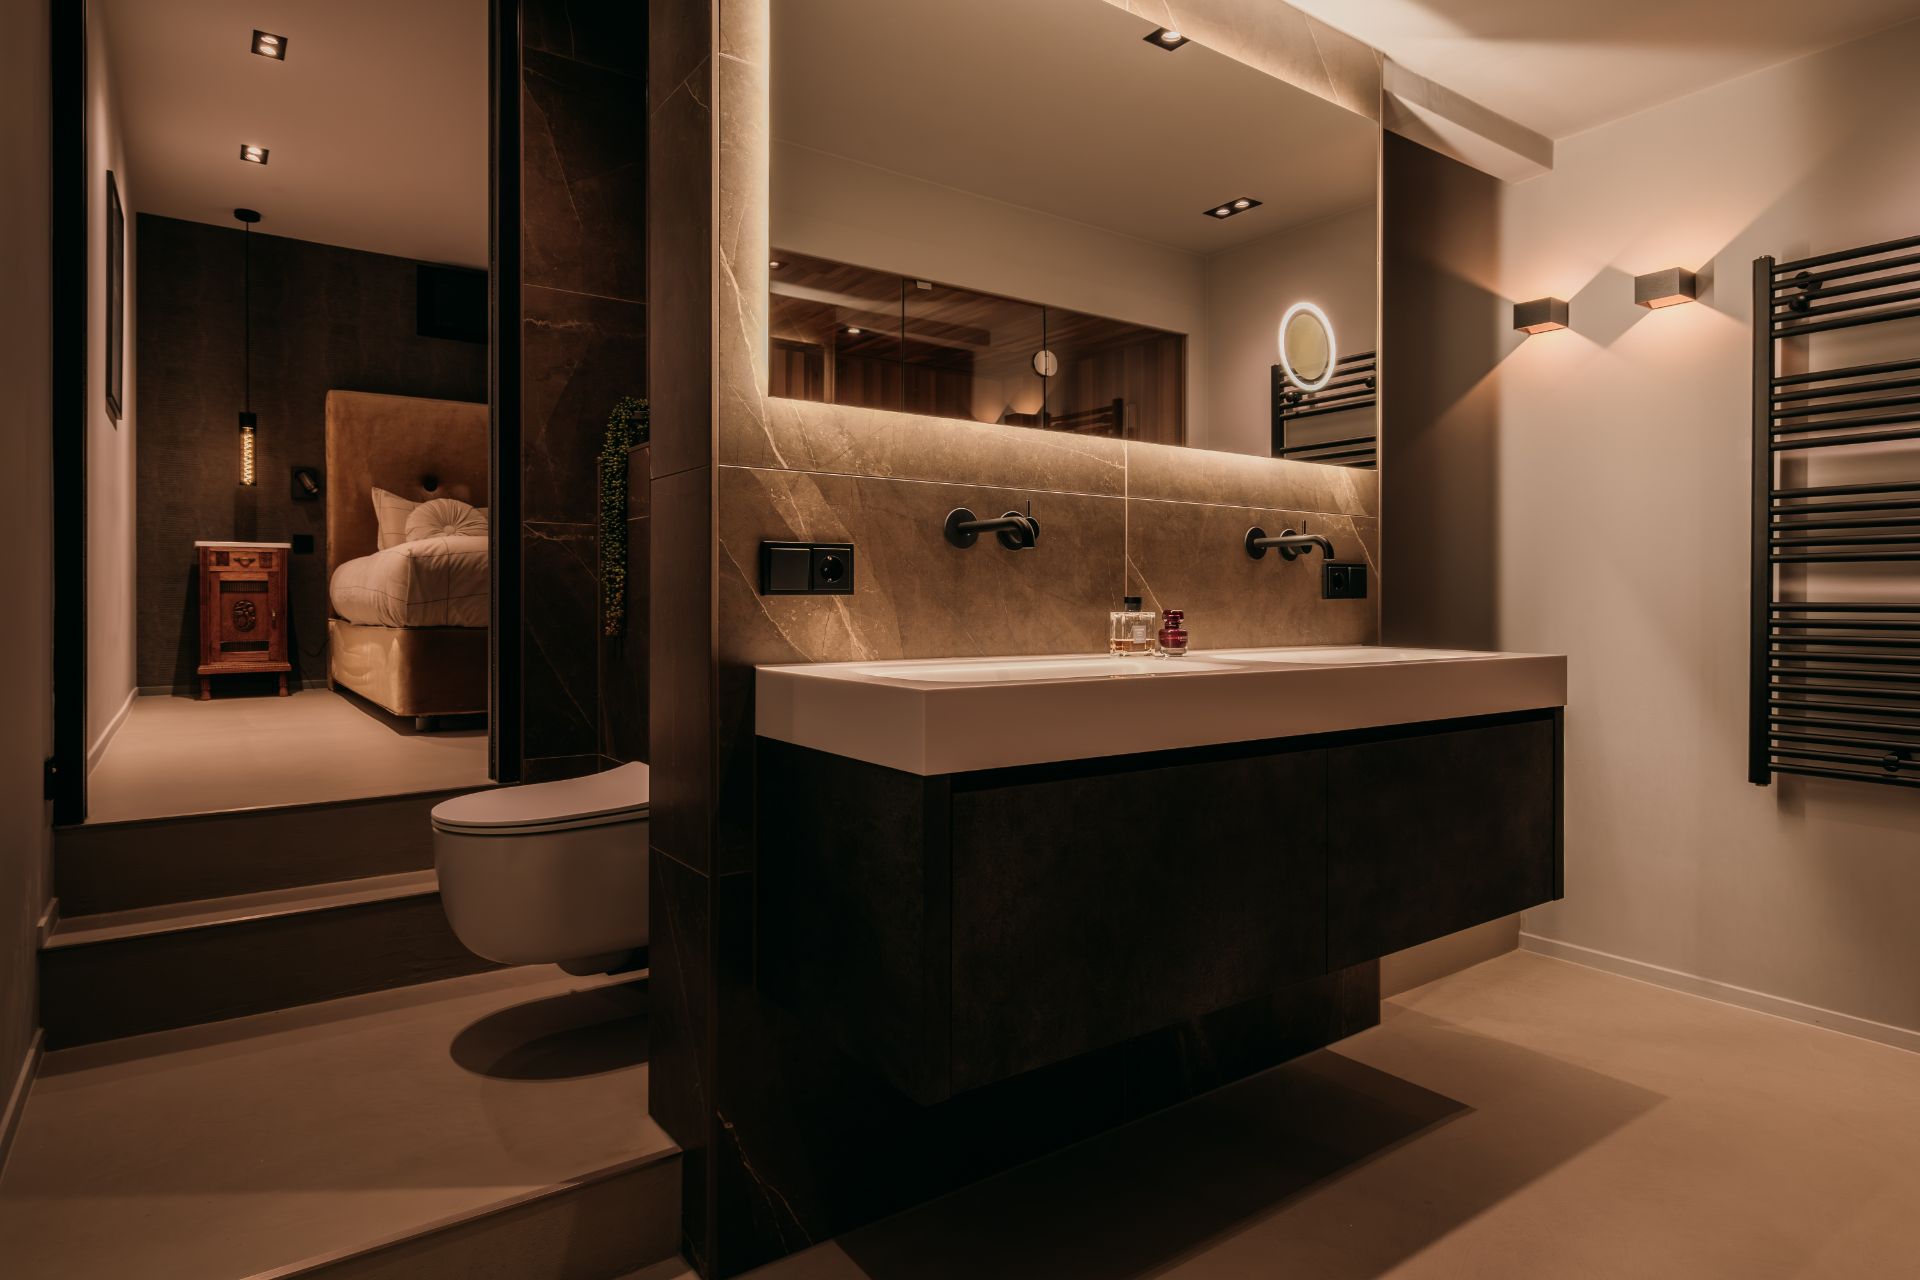 Foto: luxe en suite badkamer in woonark loenen aan de vecht   012